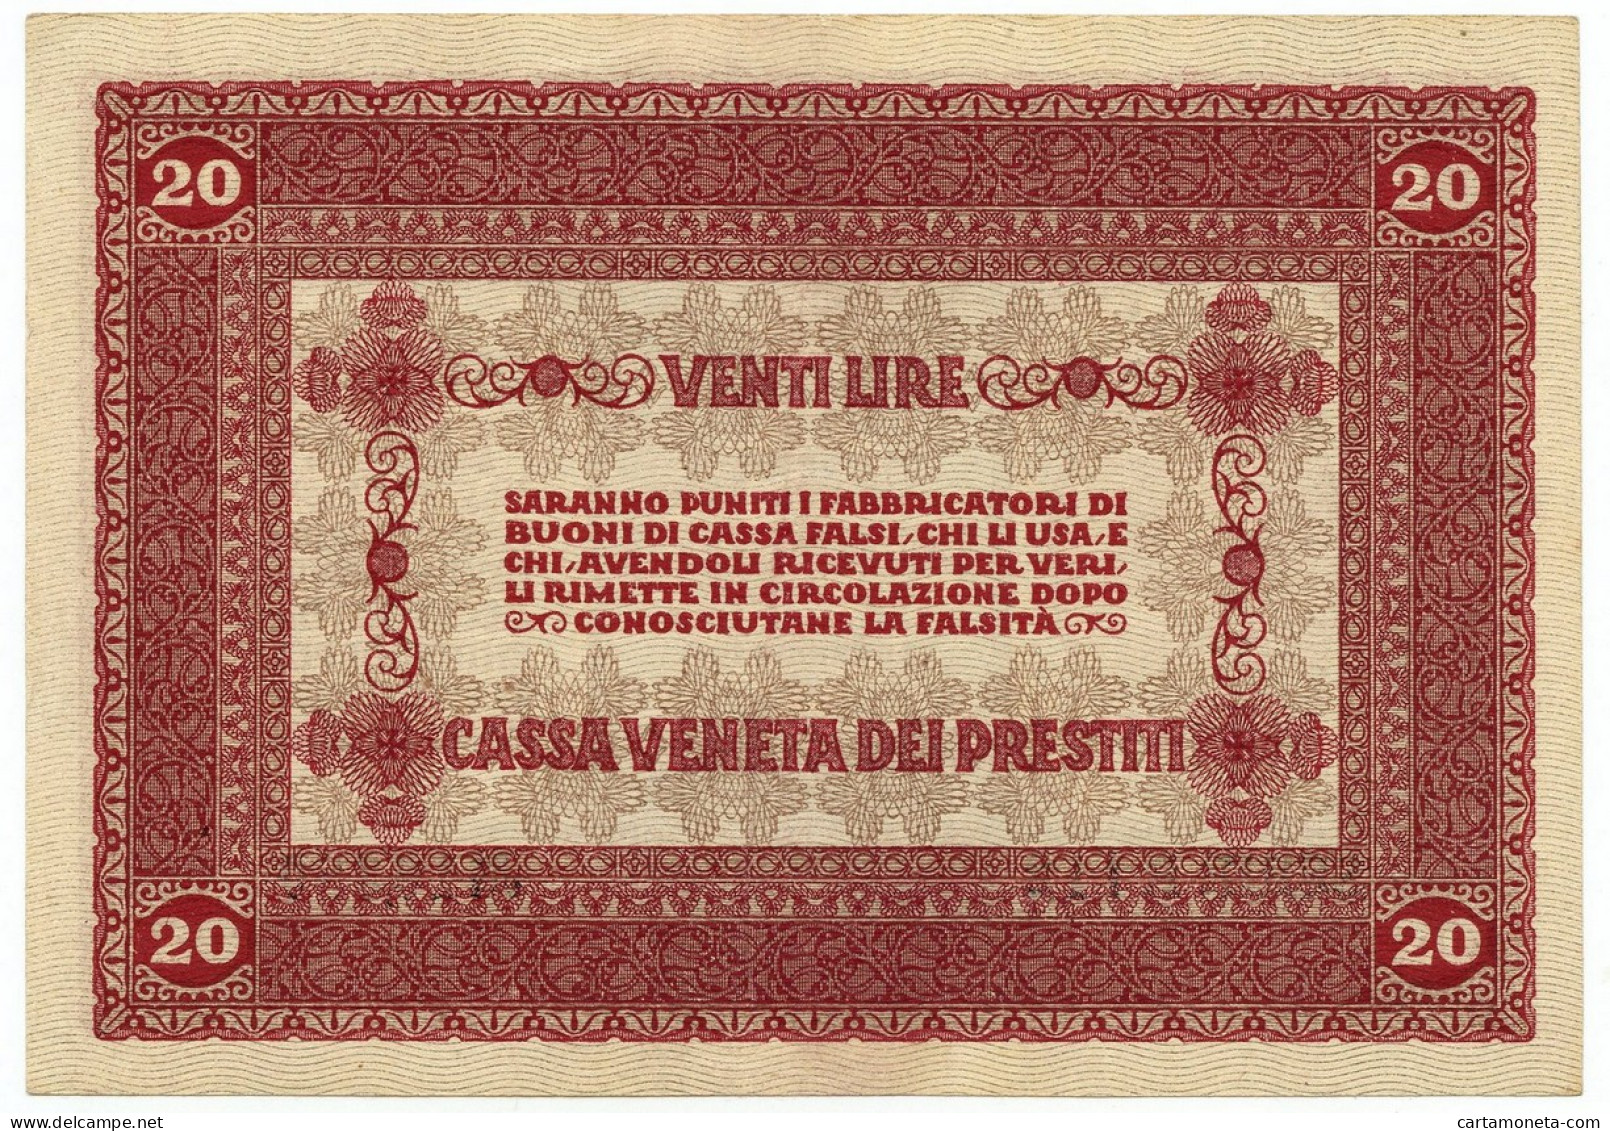 20 LIRE CASSA VENETA DEI PRESTITI OCCUPAZIONE AUSTRIACA 02/01/1918 SPL - Occupation Autrichienne De Venezia